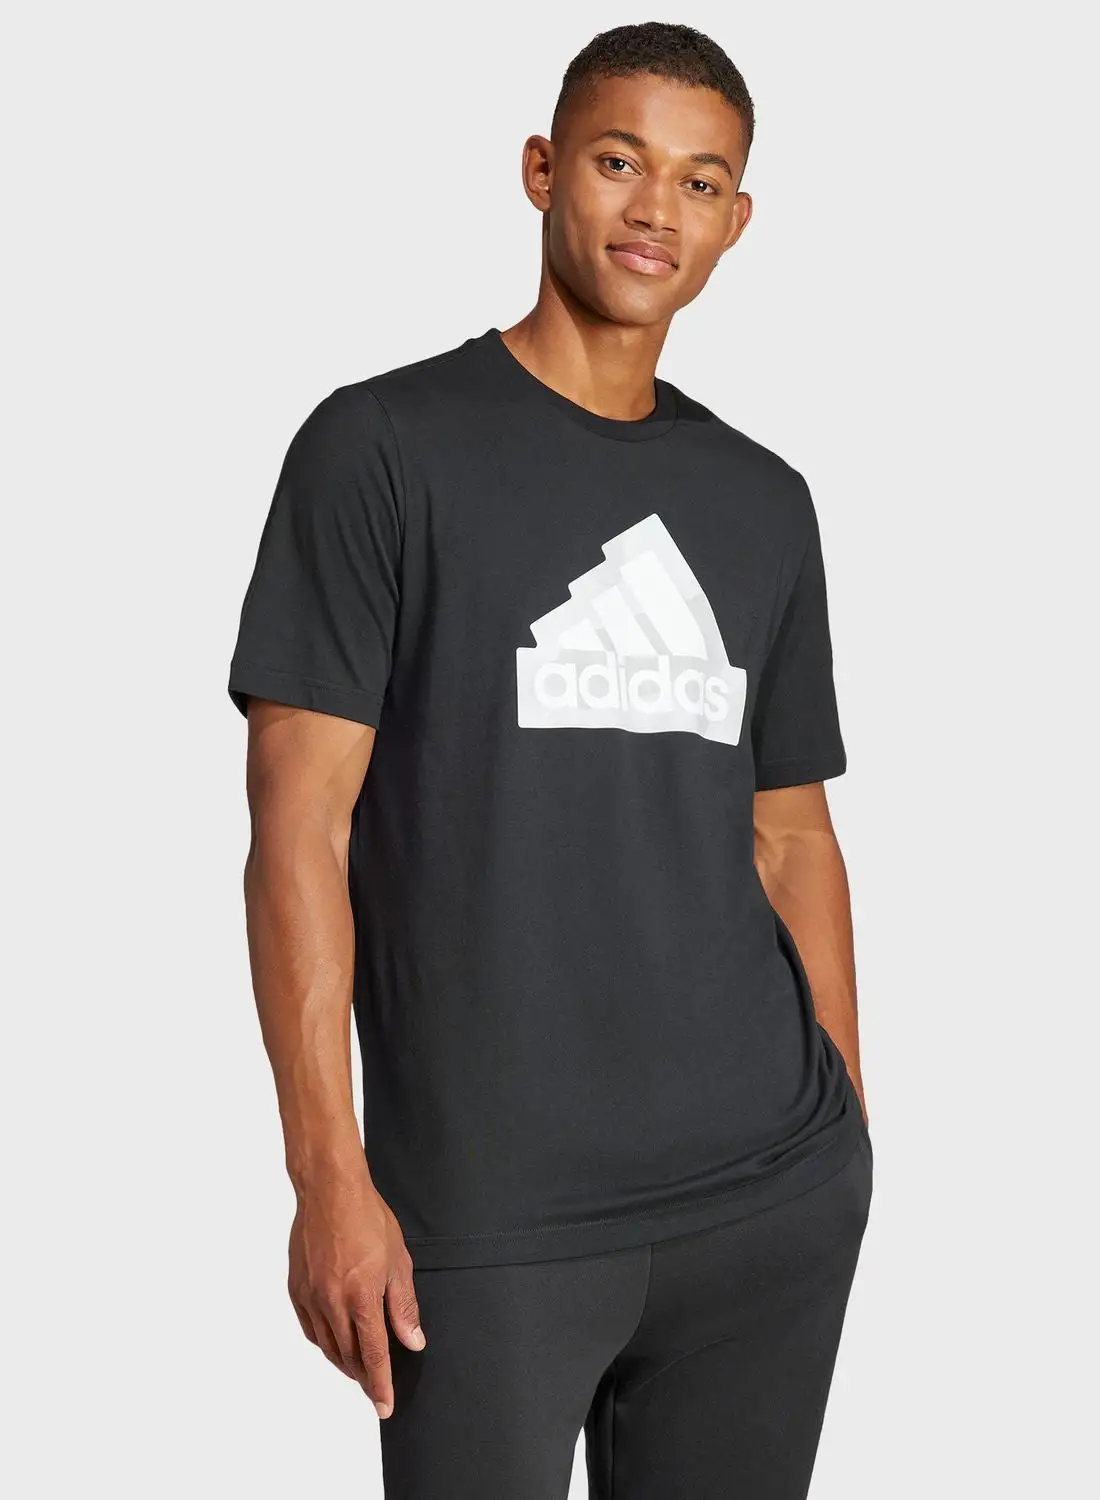 Adidas City Escape Torn Camo Graphic T-Shirt